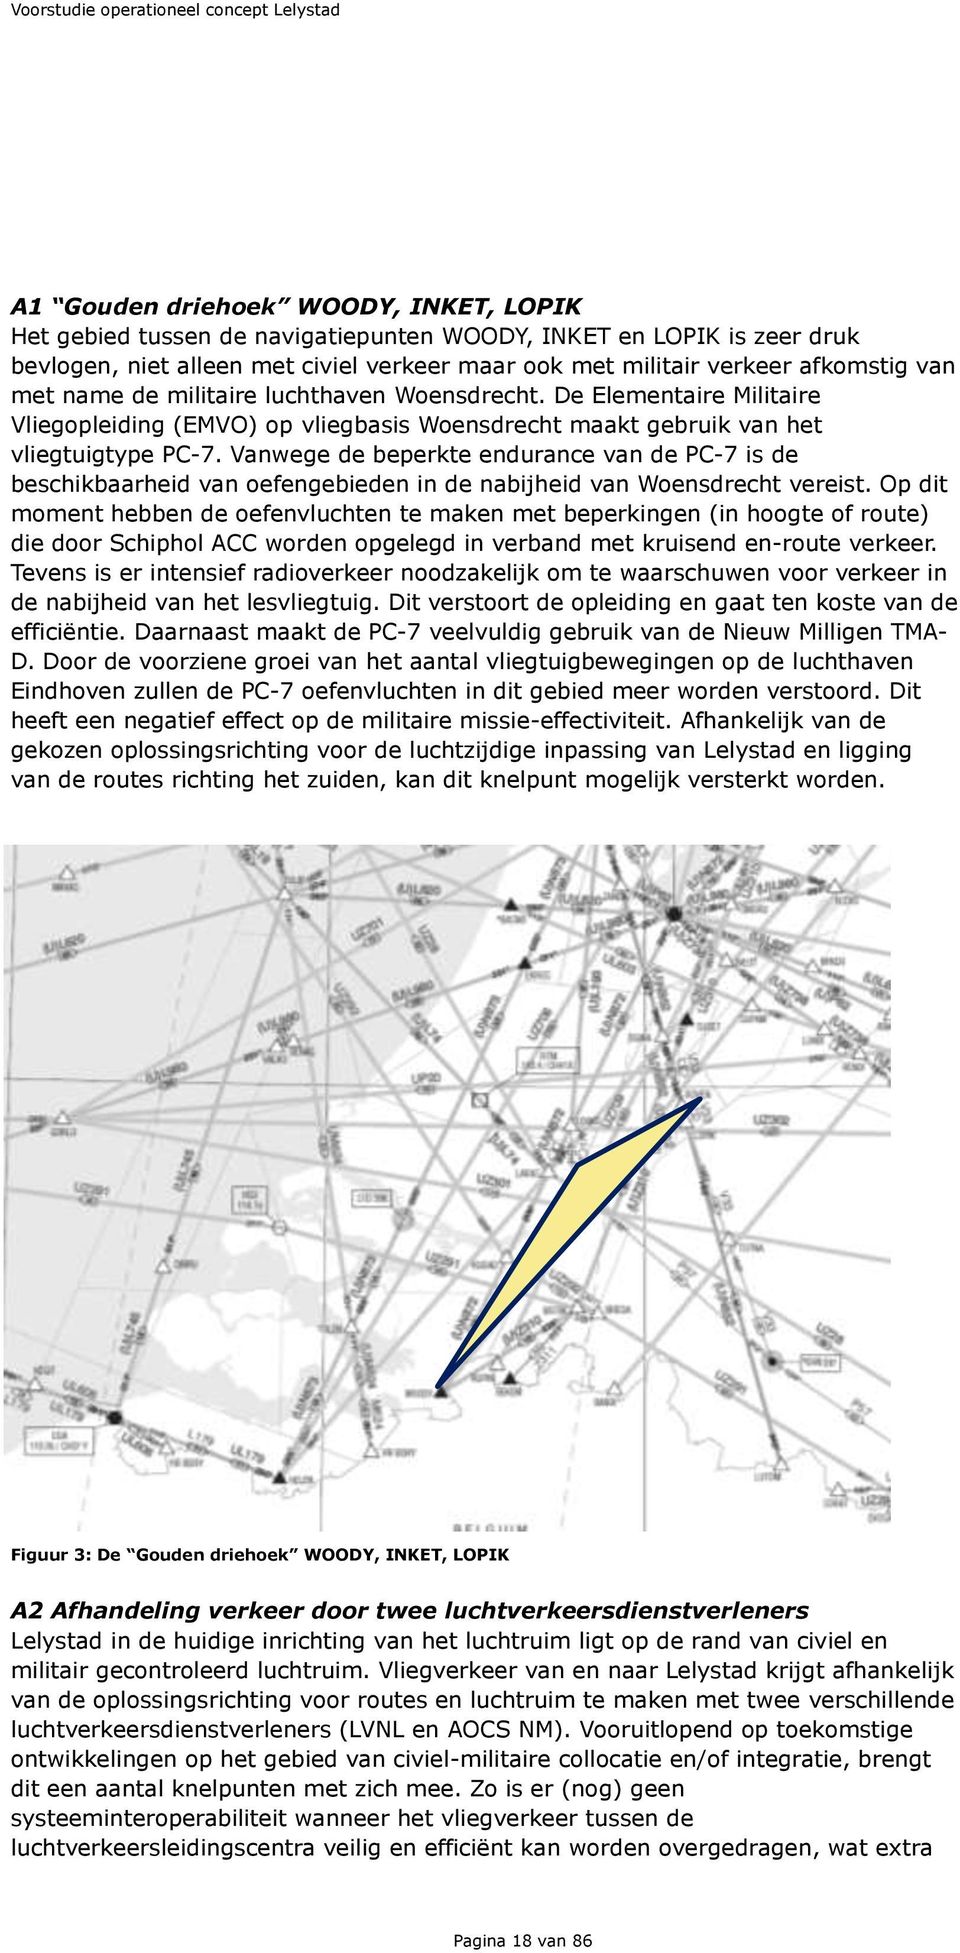 Vanwege de beperkte endurance van de PC-7 is de beschikbaarheid van oefengebieden in de nabijheid van Woensdrecht vereist.